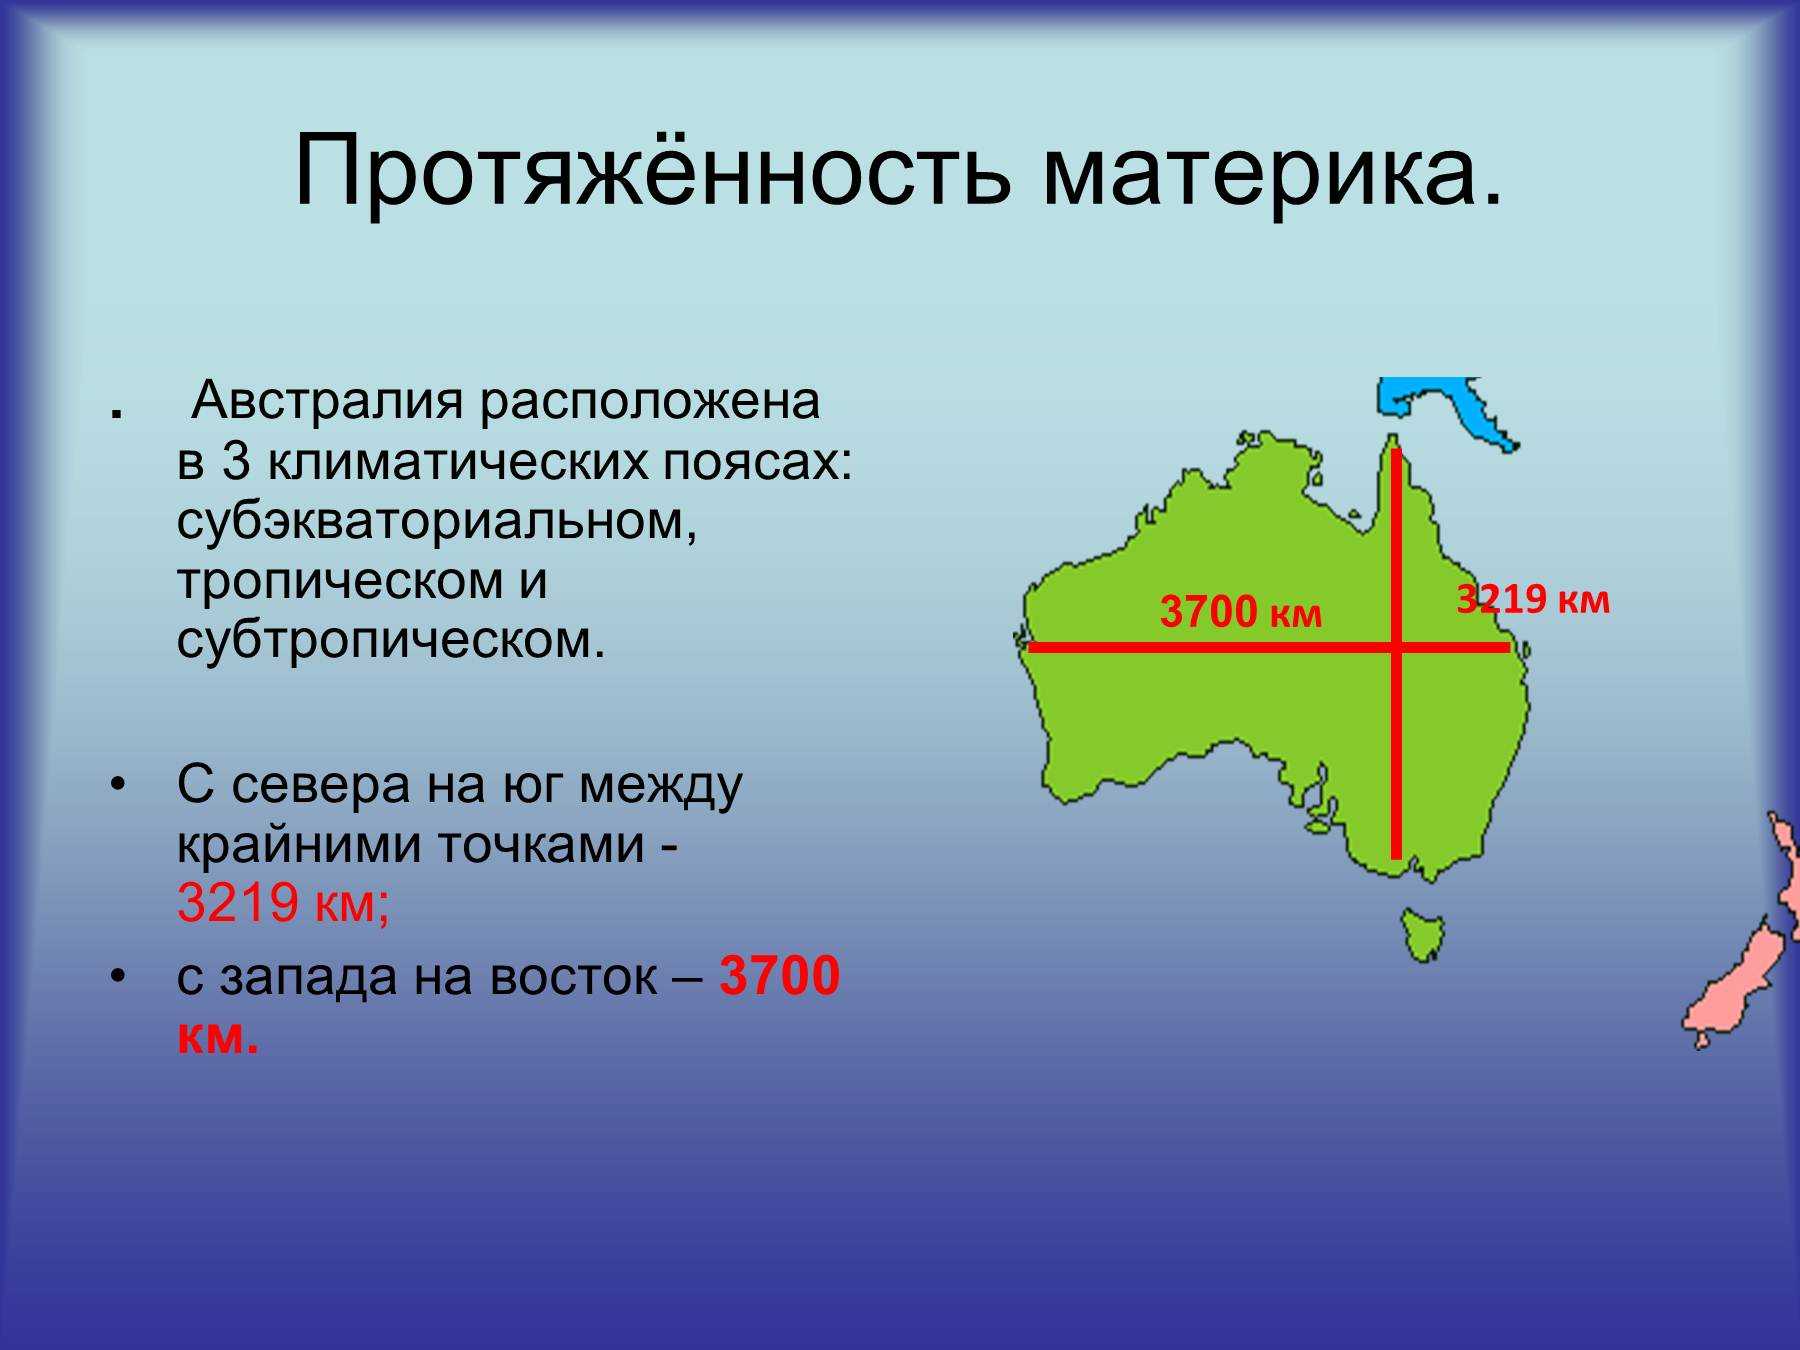 Географические координаты перт австралия. Географическое положение крайних точек Австралии. Протяженность Австралии. Протяженность материка. Протяженность материка Австралия в градусах.